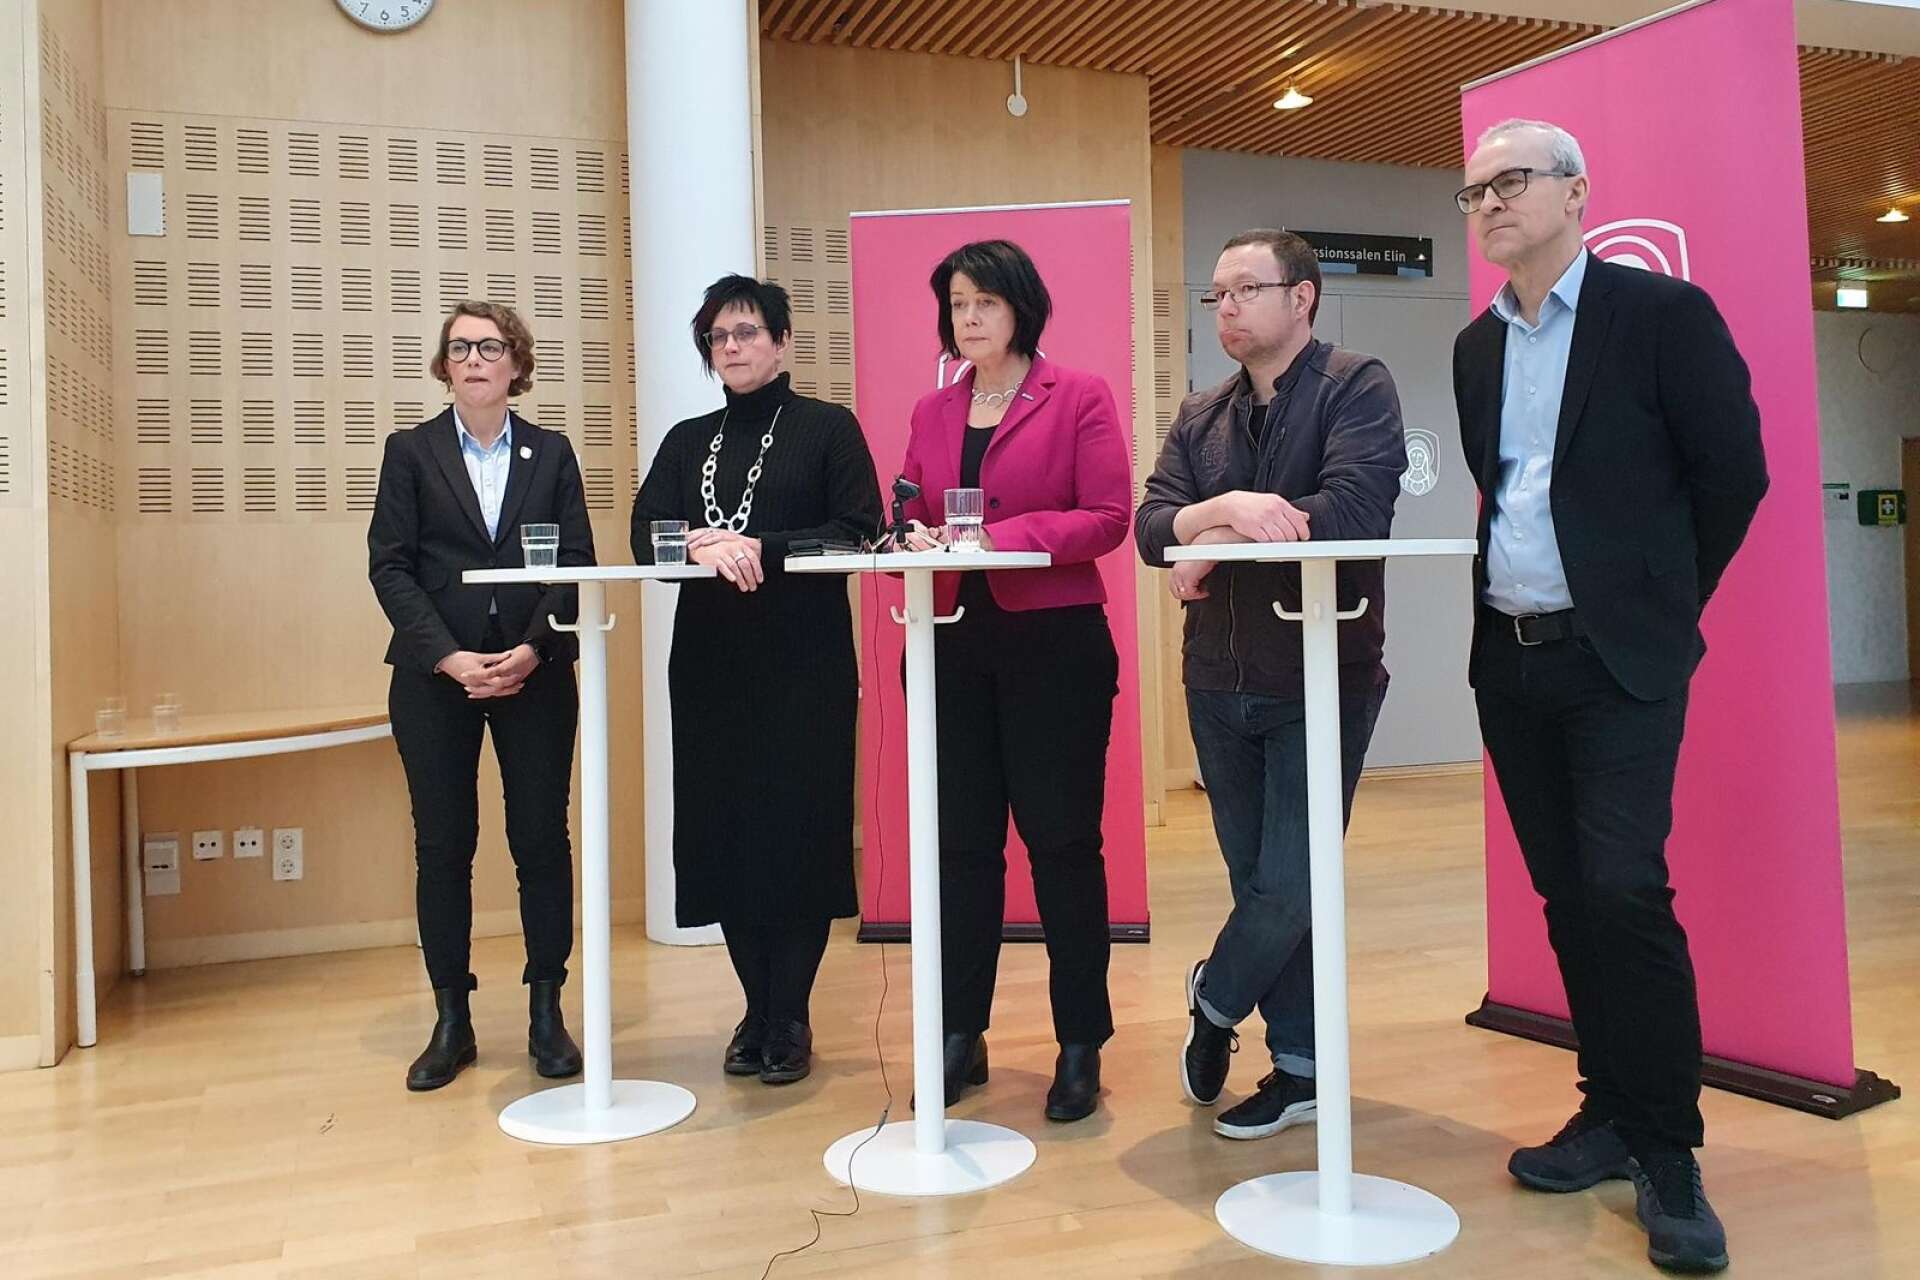 ”Många har ögonen på Skövde – några har redan hört av sig”, säger Katarina Jonsson (M) på presskonferensen.